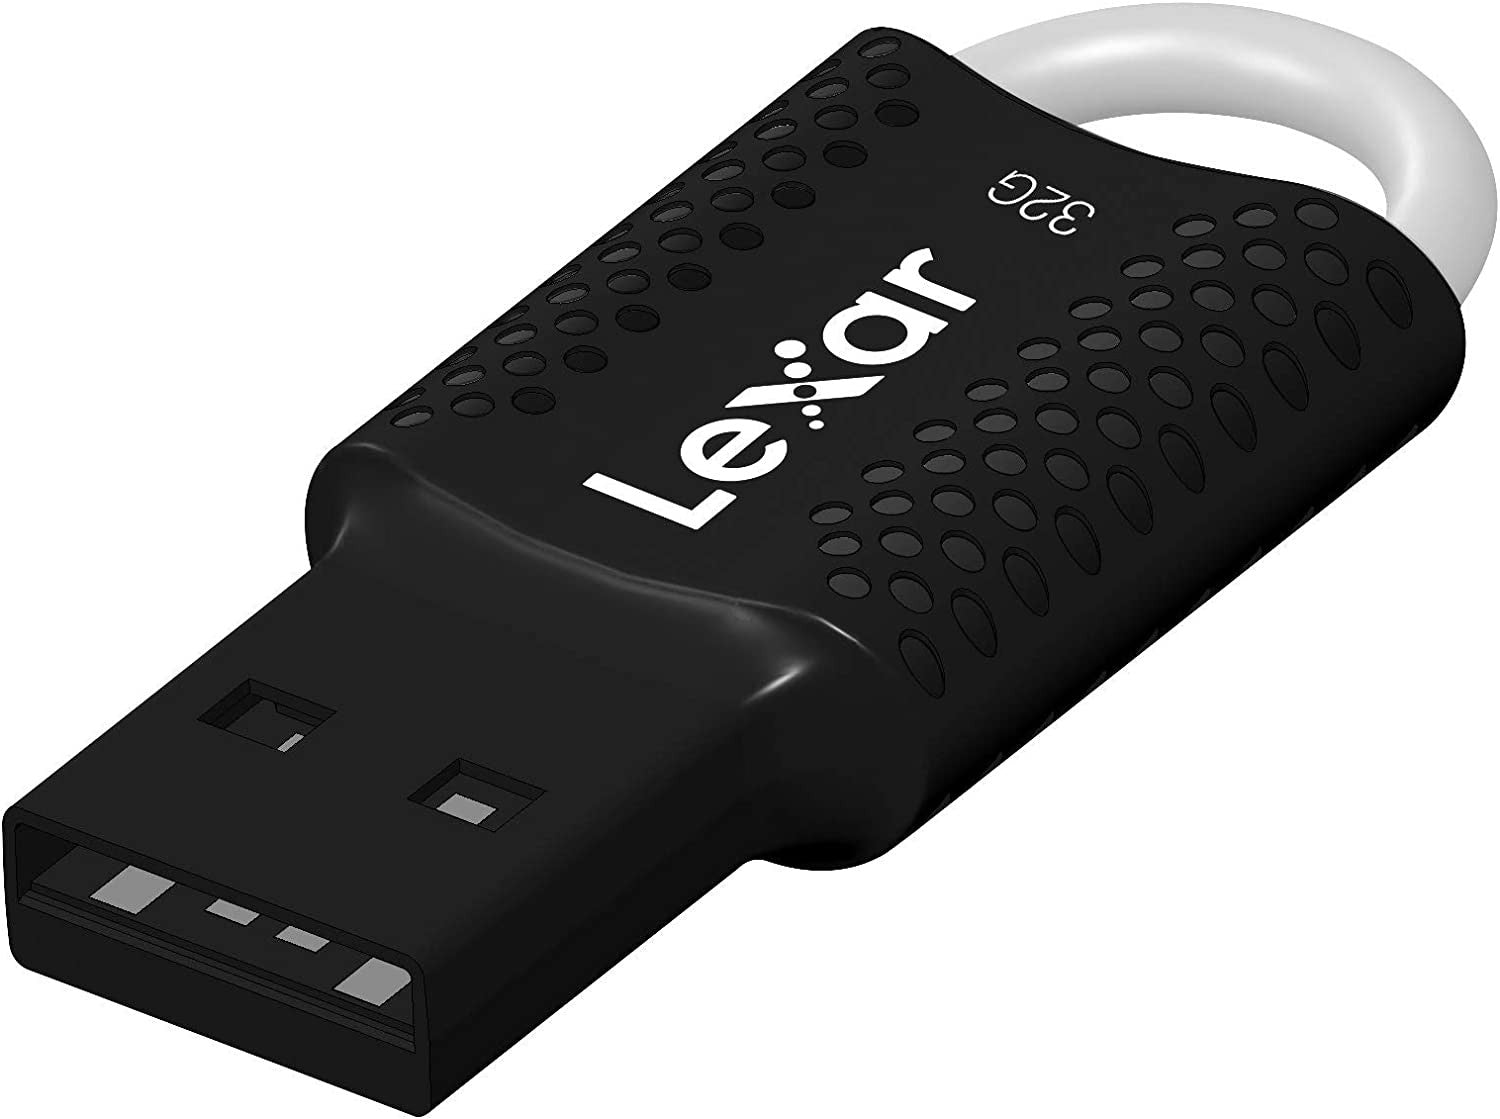 32GB Lexar V40 USB 2.0 FLASH